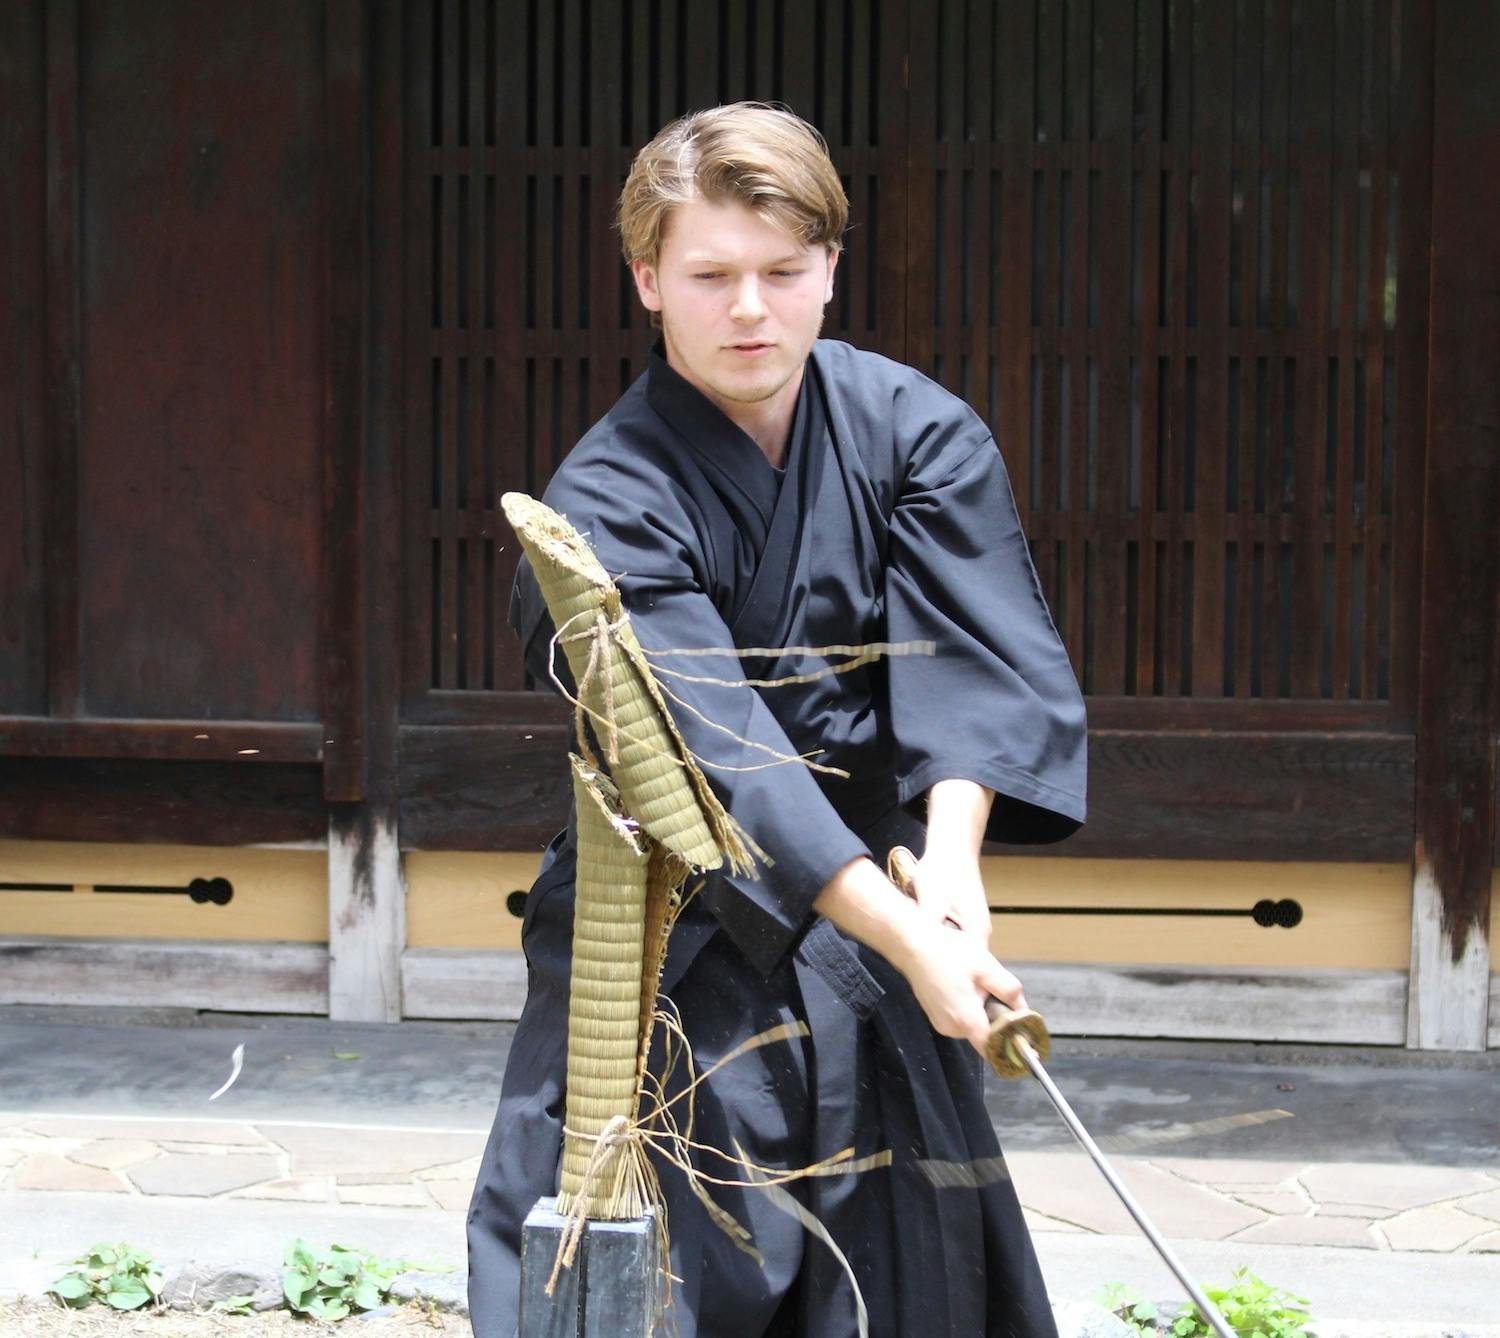 Image - Kyoto Samurai Experience